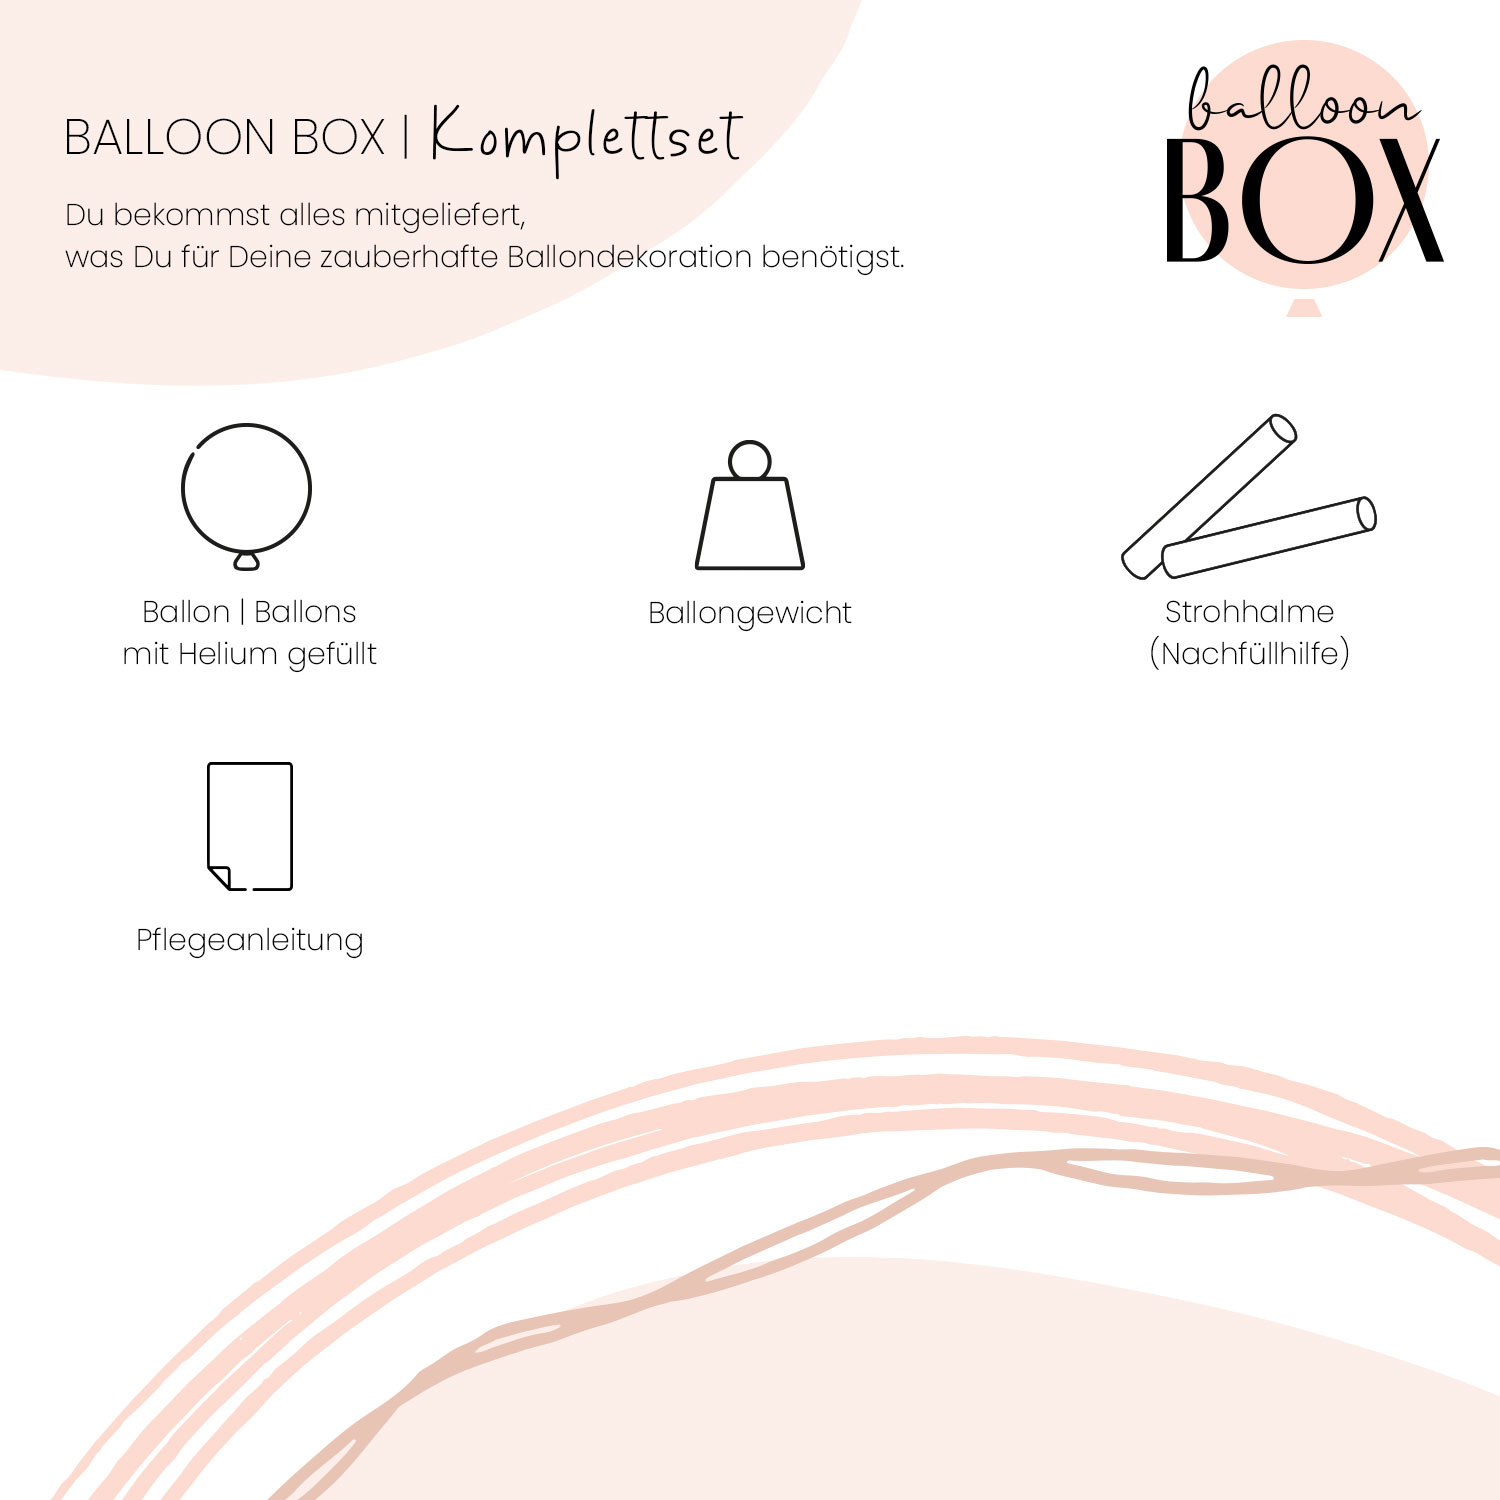 Heliumballon in a Box - Für Dich Konfetti